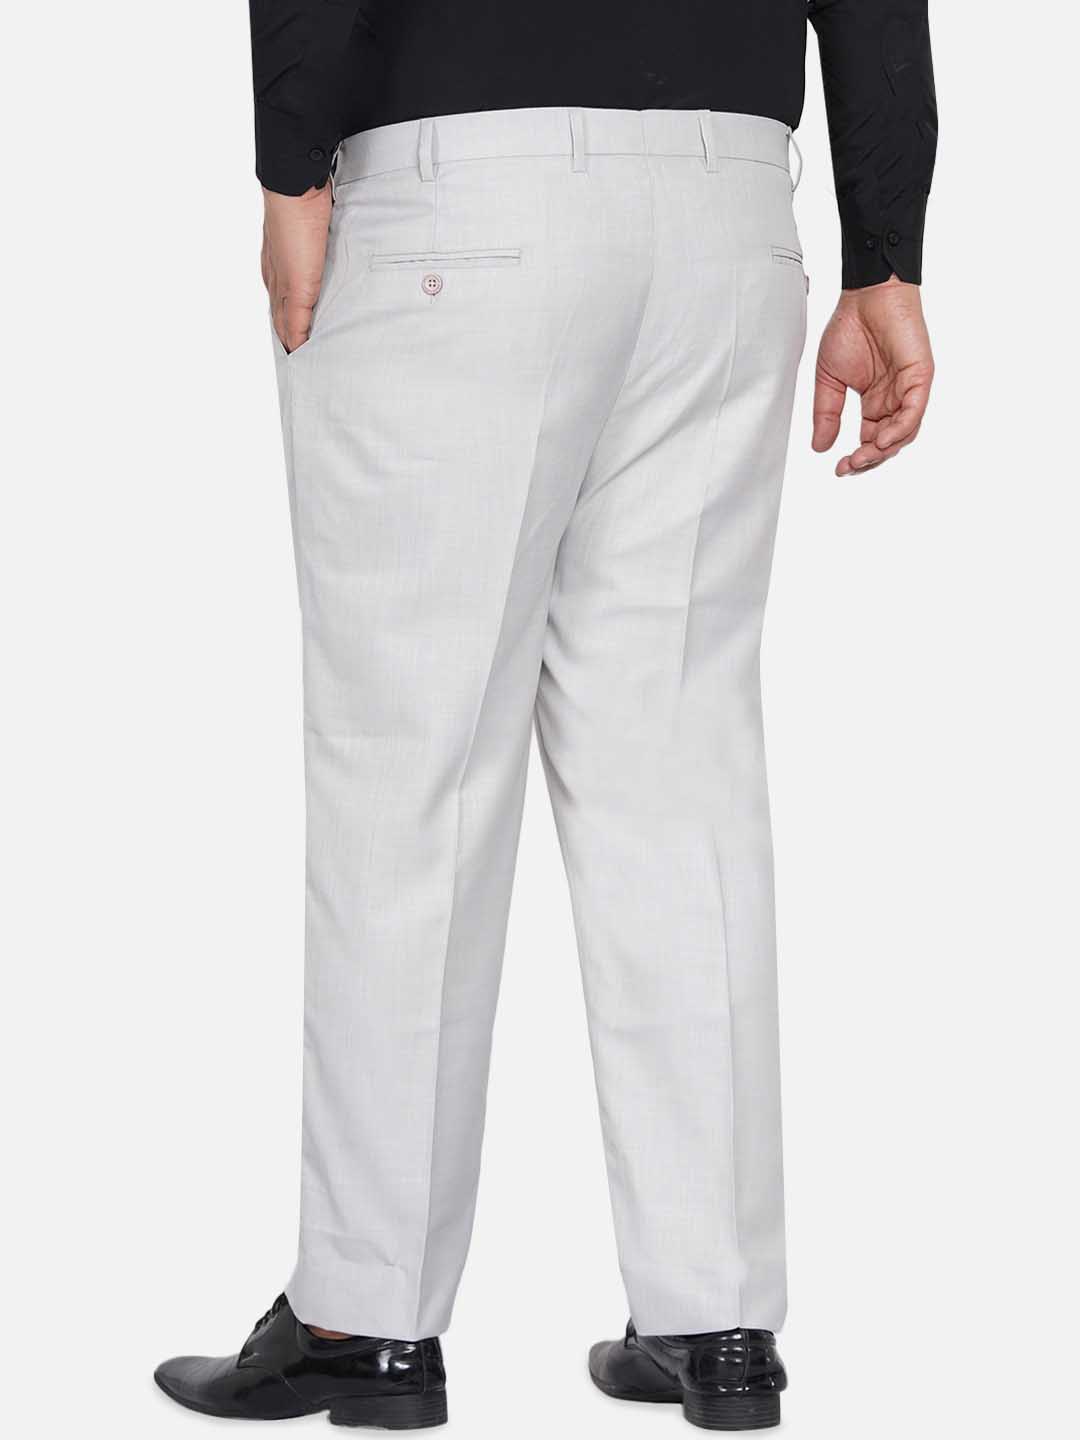 bottomwear/trousers/JPTR22010C/jptr22010c-5.jpg